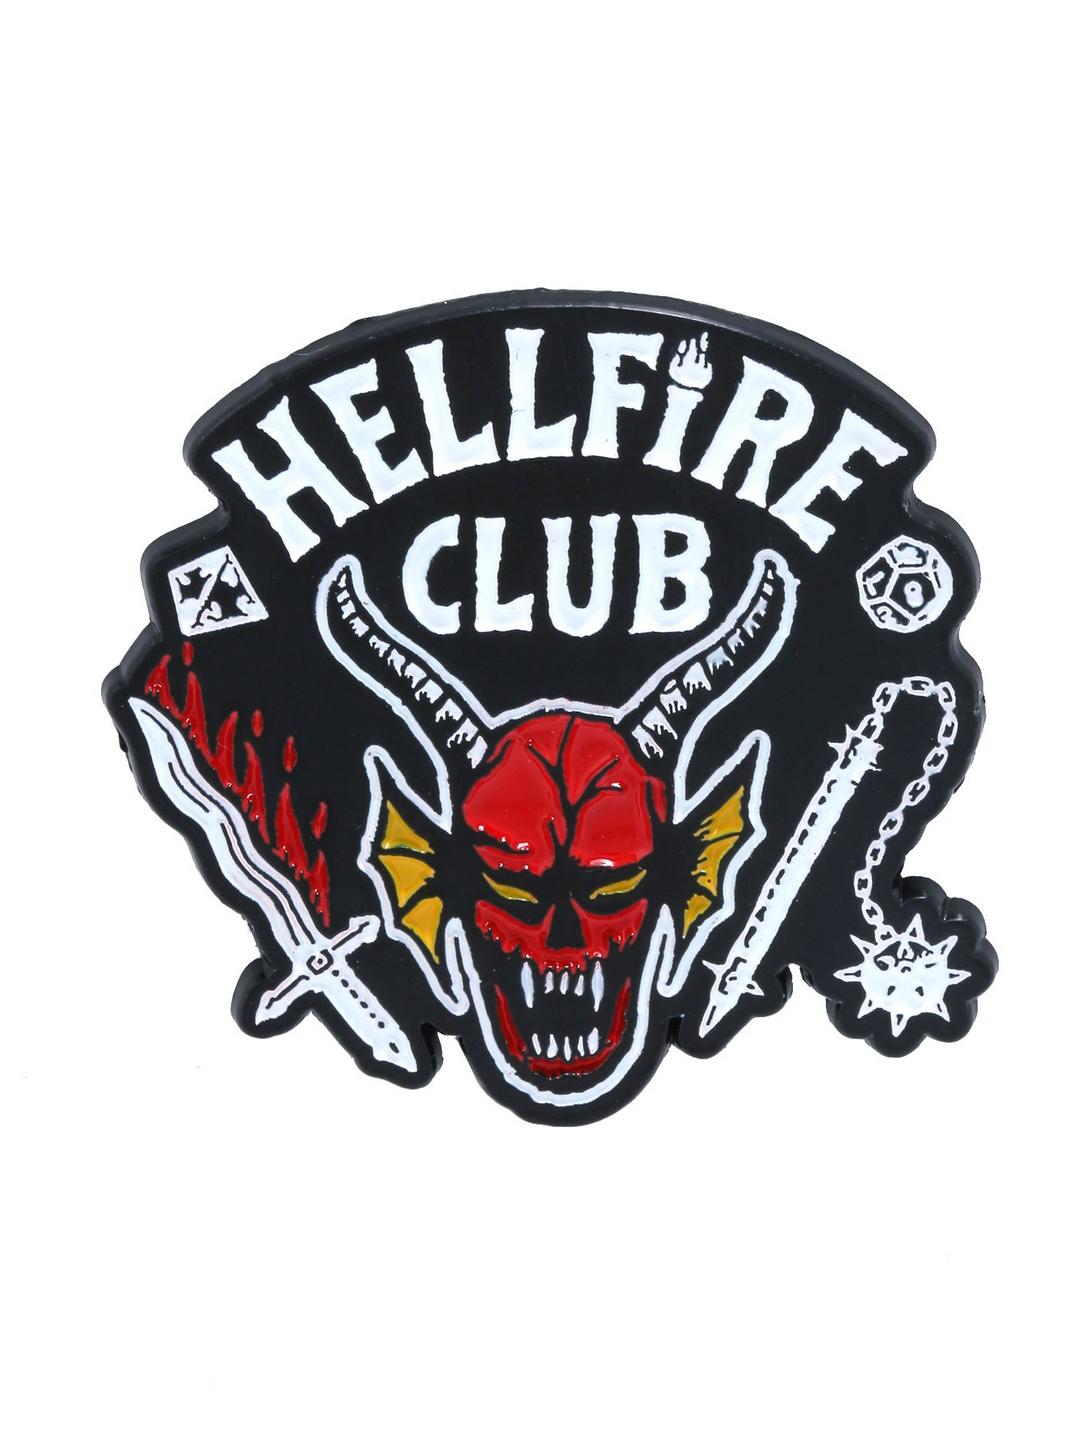 Stranger Things Hellfire Club Logo Enamel Pin, , hi-res